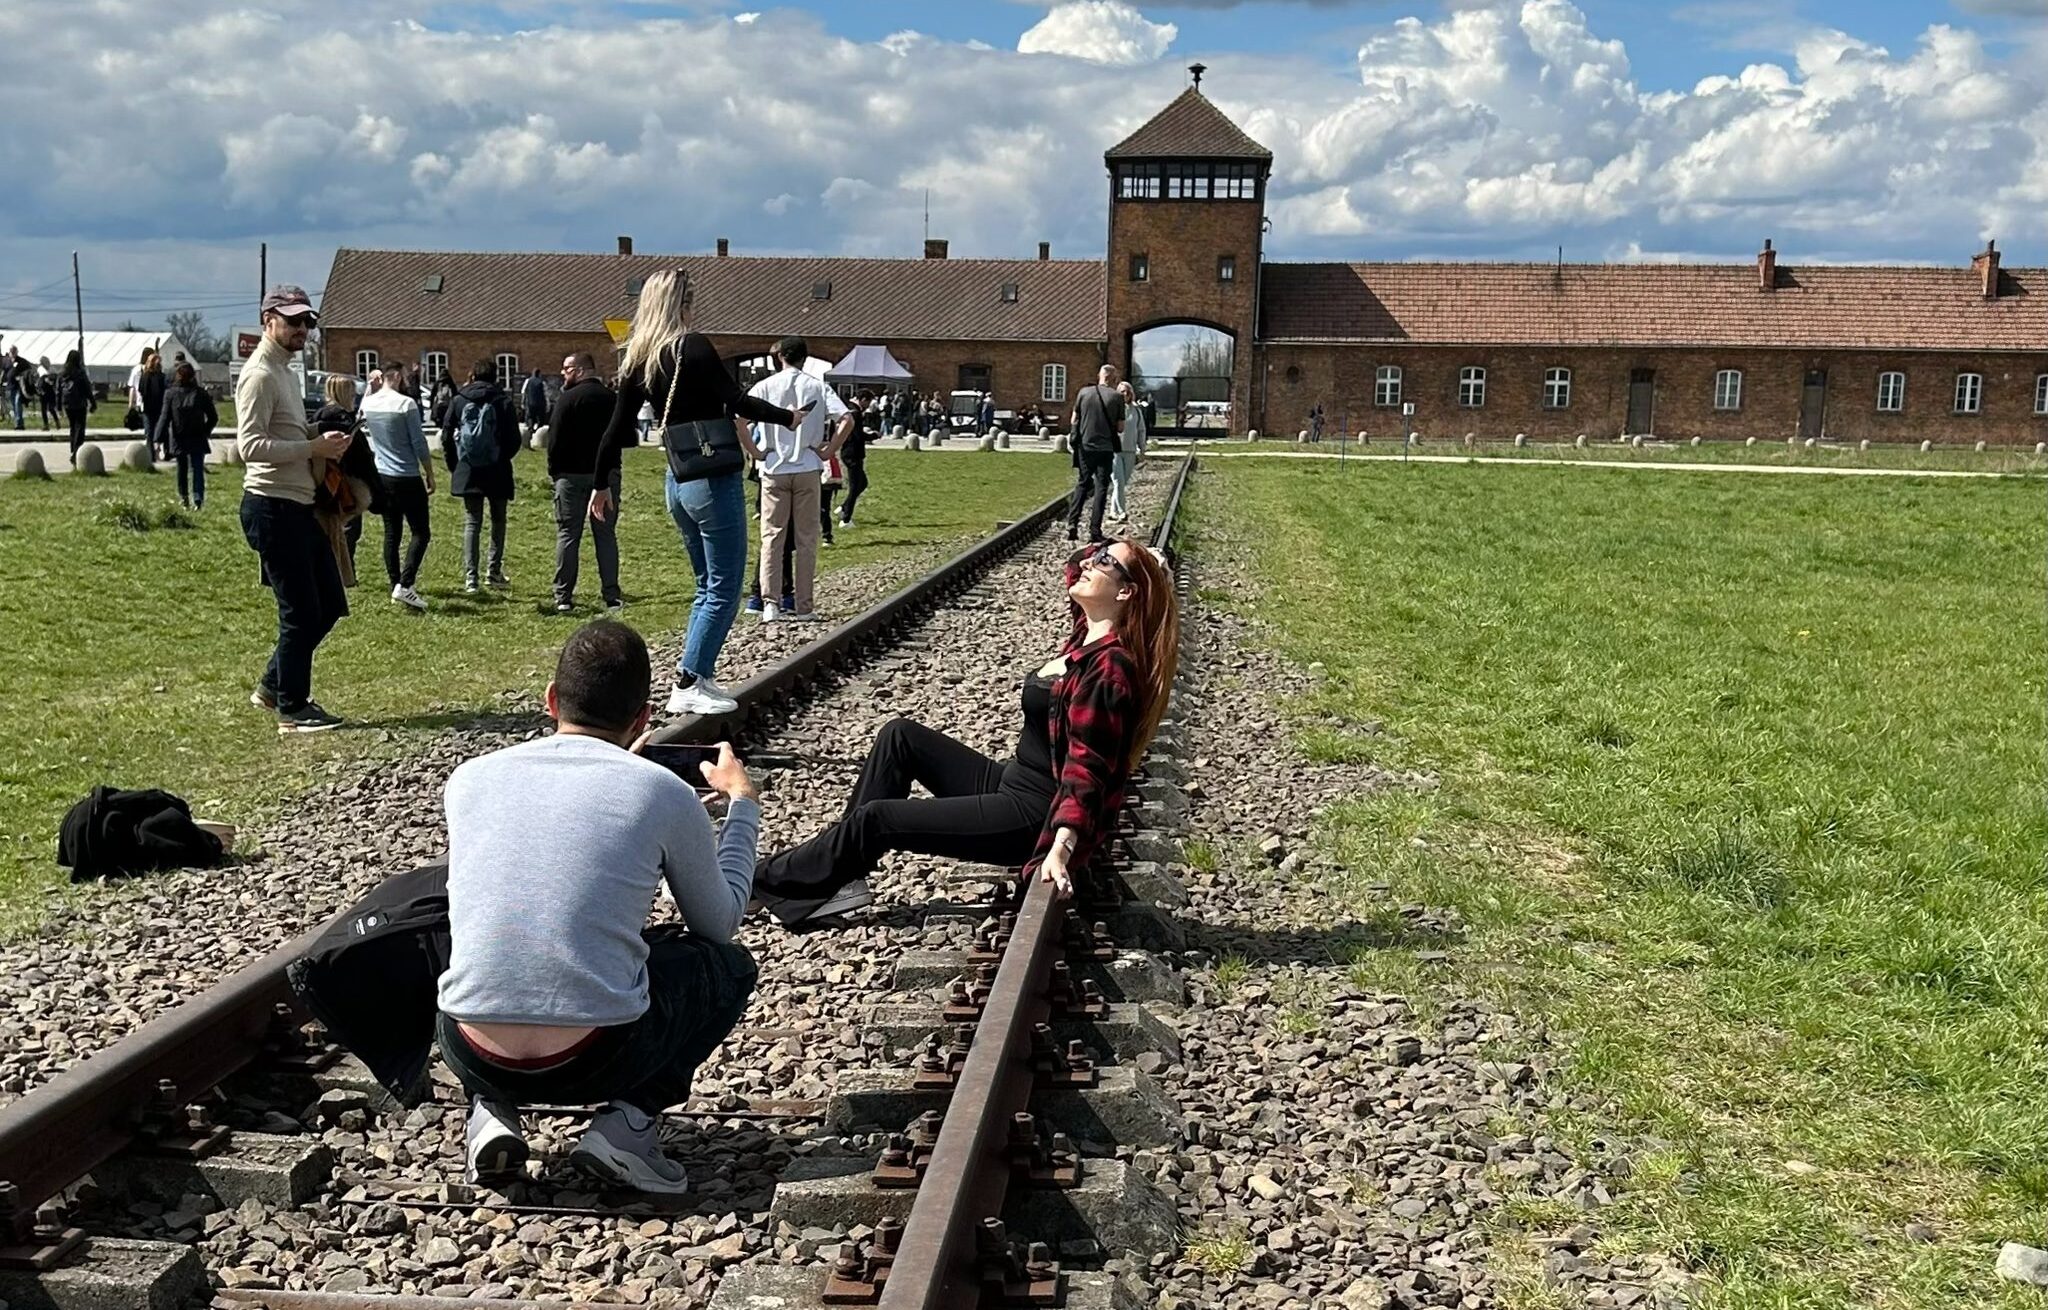 Nagy port kavart az Auschwitzban ízléstelenül pózoló turistáról készült fotó – Neokohn